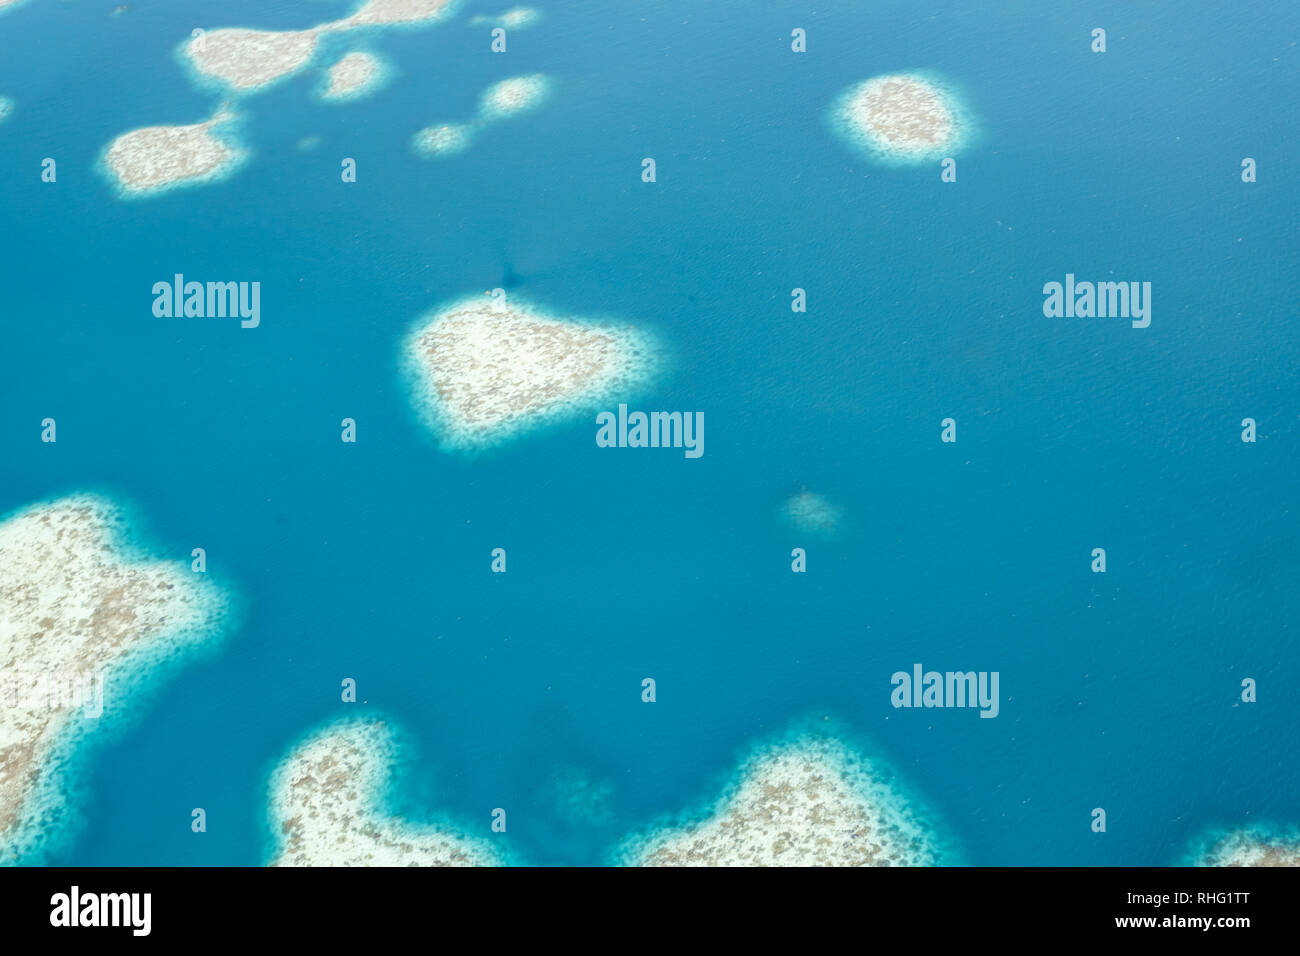 Motif unique et les couleurs des hauts-fonds des récifs coralliens dans le Pacifique sud Banque D'Images